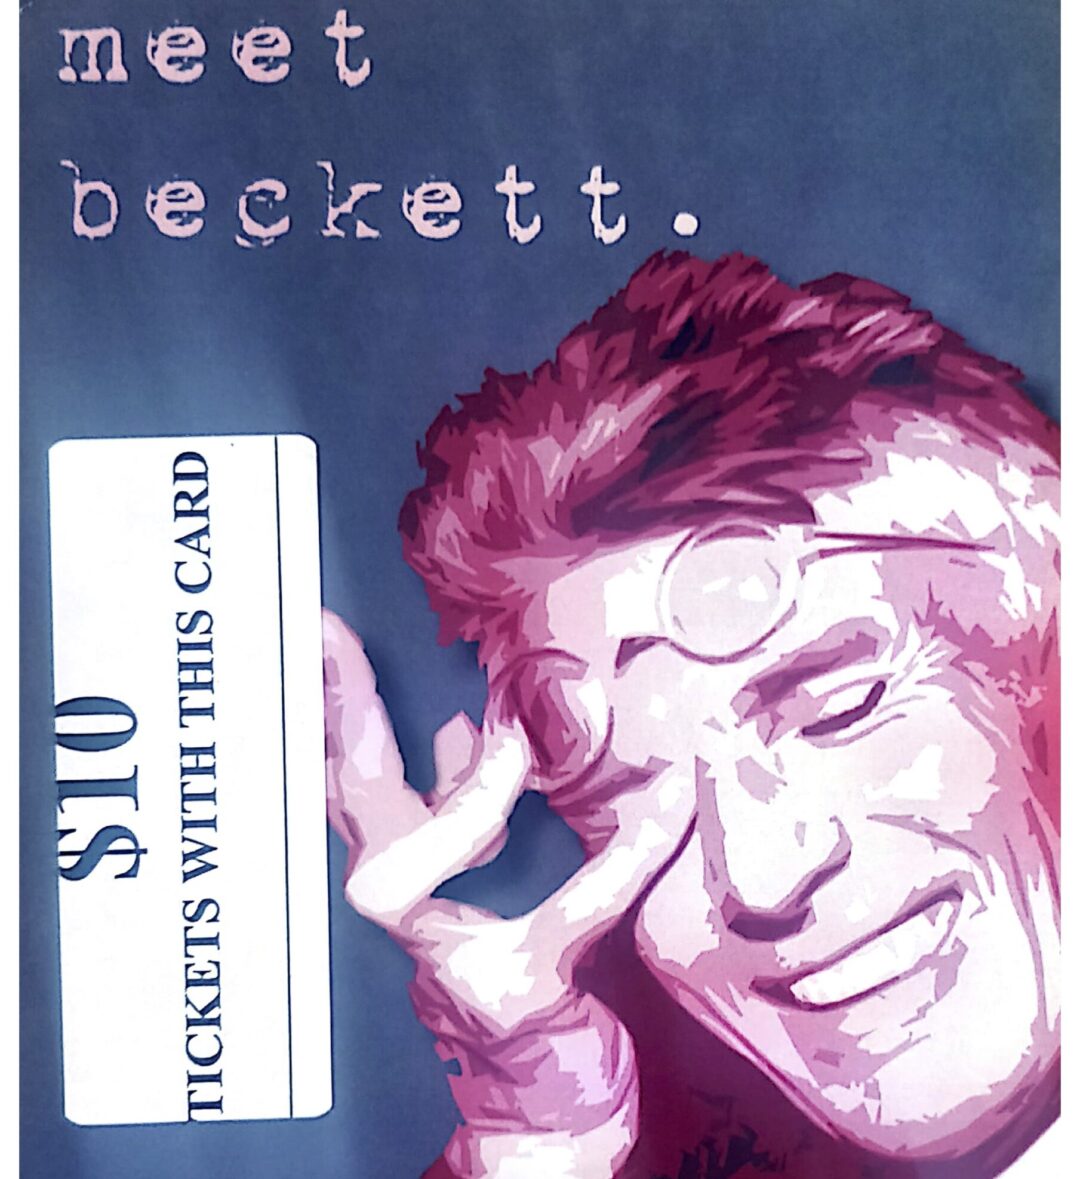 Meet Beckett: Beckett on Film